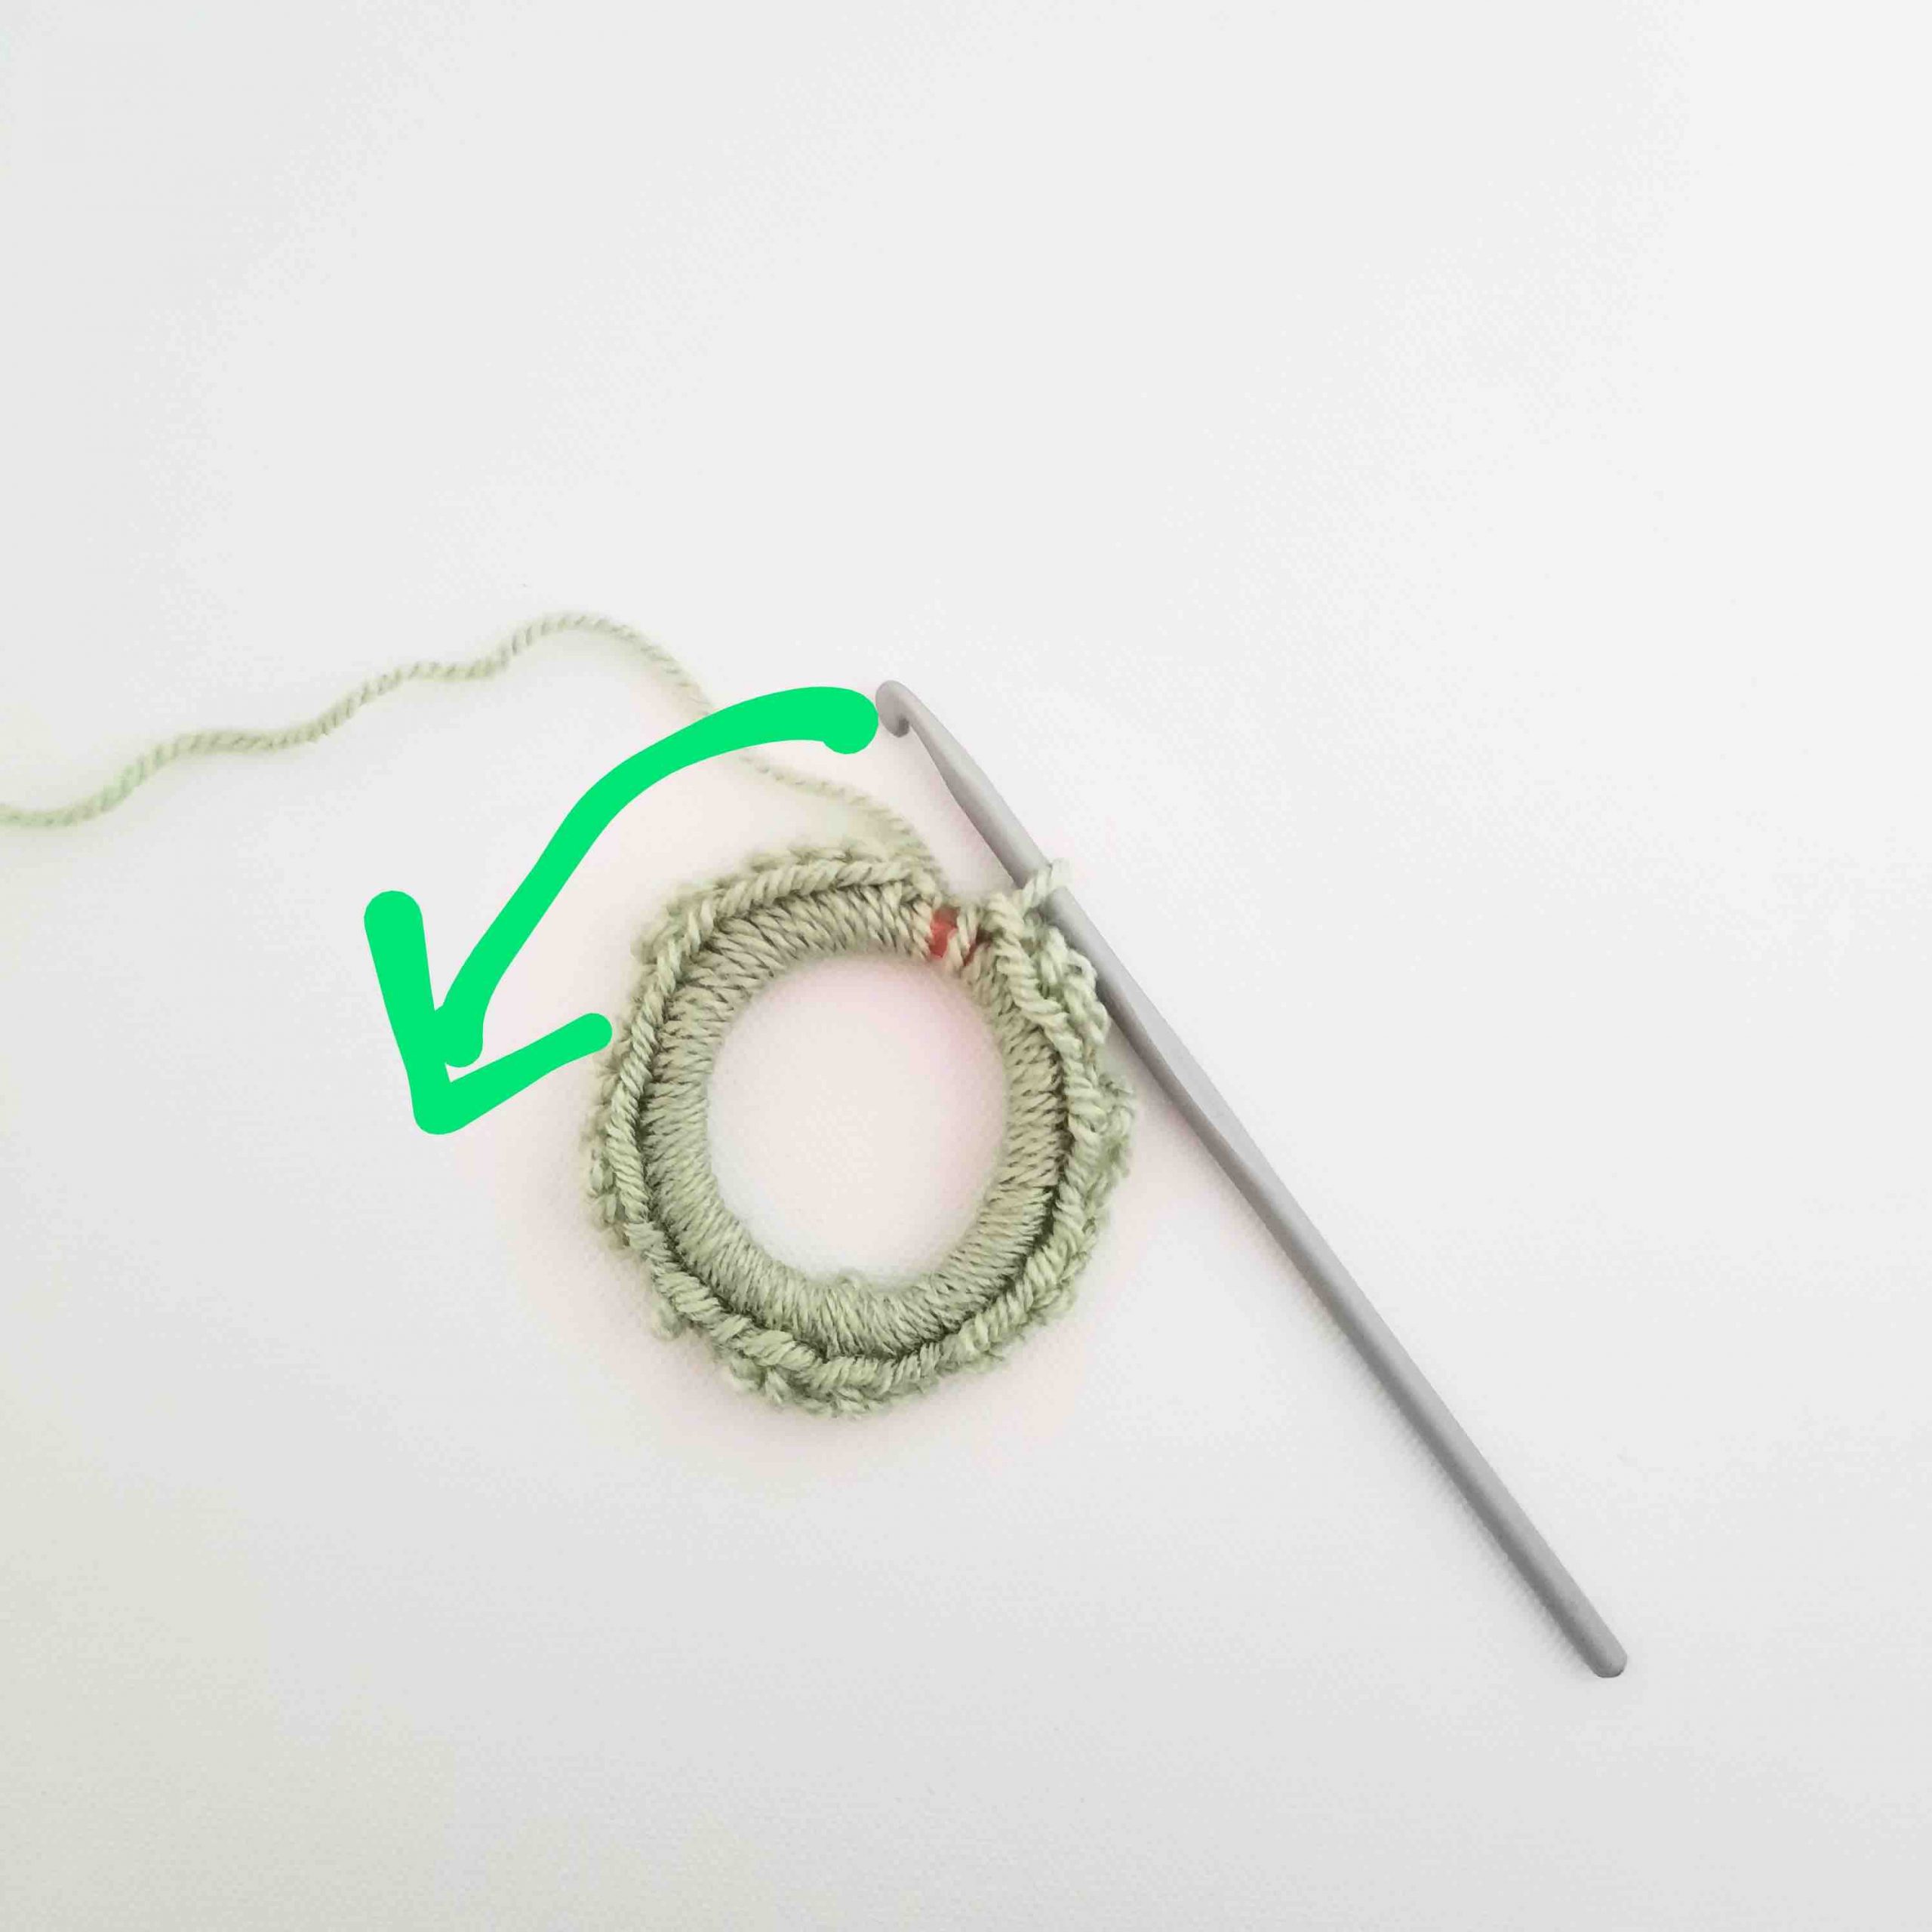 Crochet vlevet scrunchie tutorial